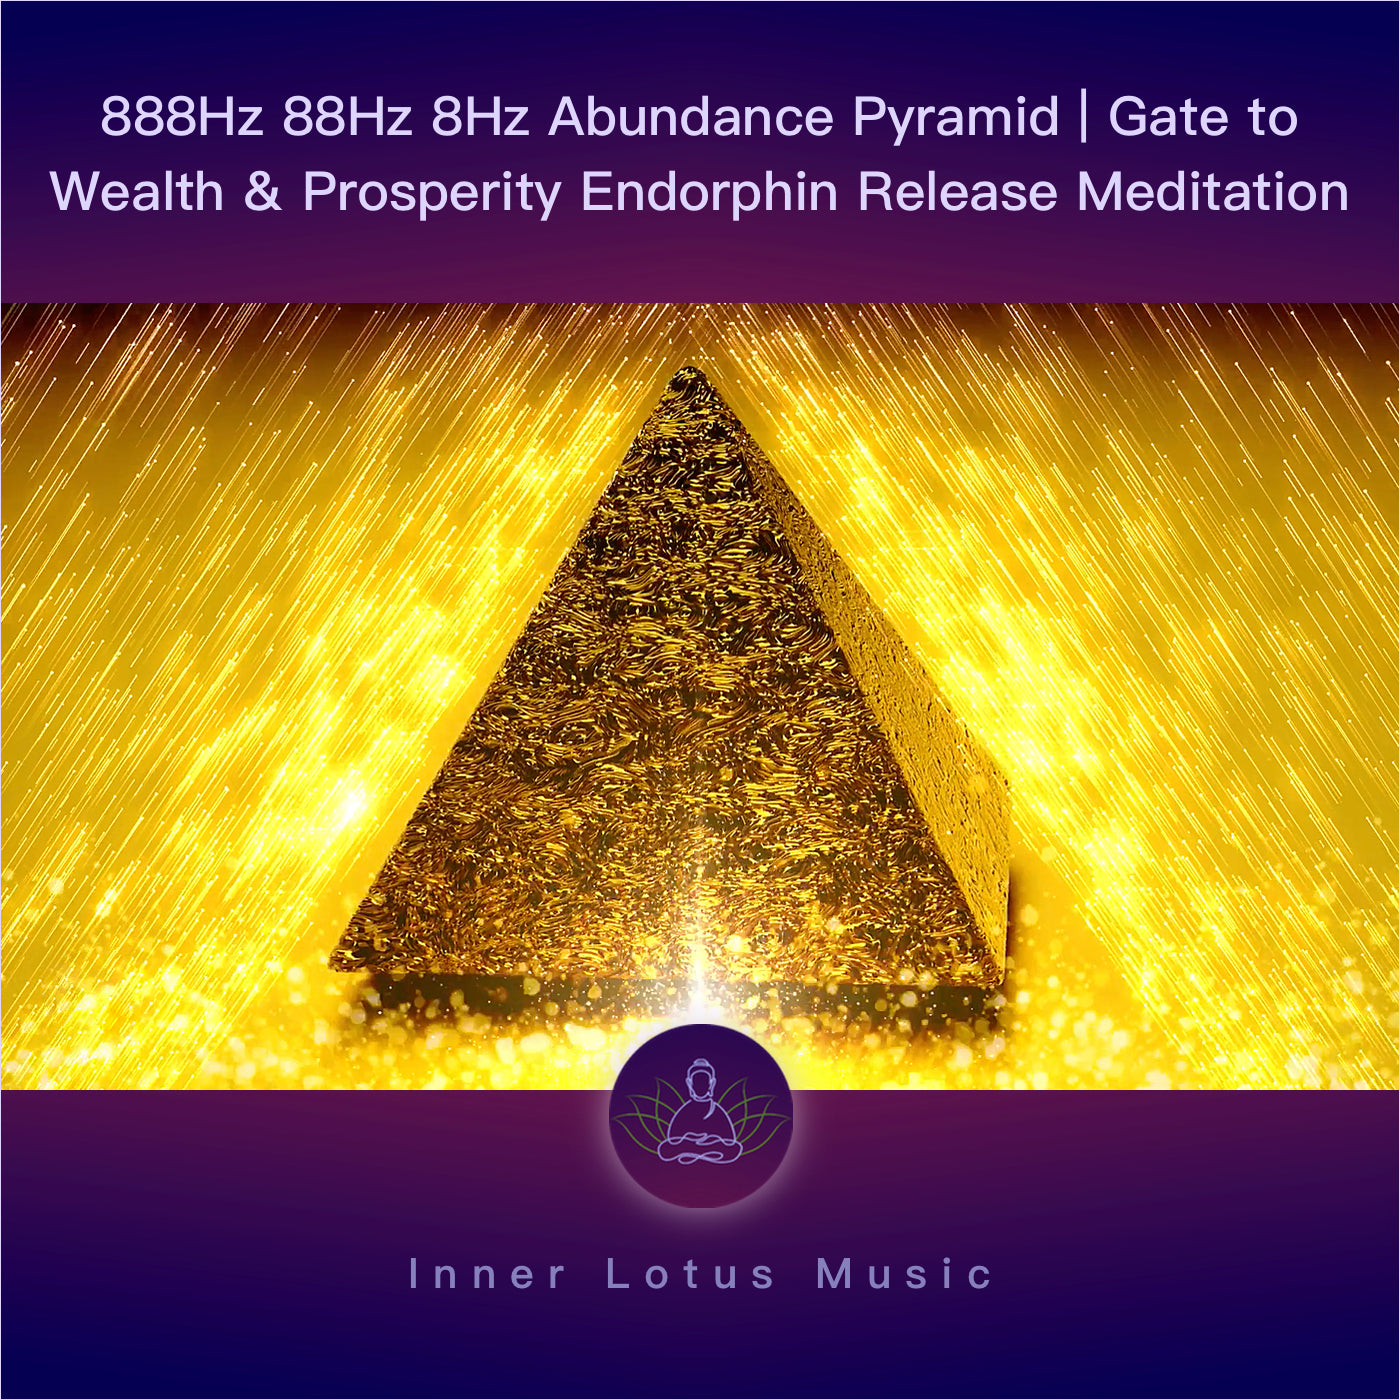 888Hz 88Hz 8Hz Pyramide de l’Abondance | Succès & Prospérité | Libération d’Endorphines | Méditation